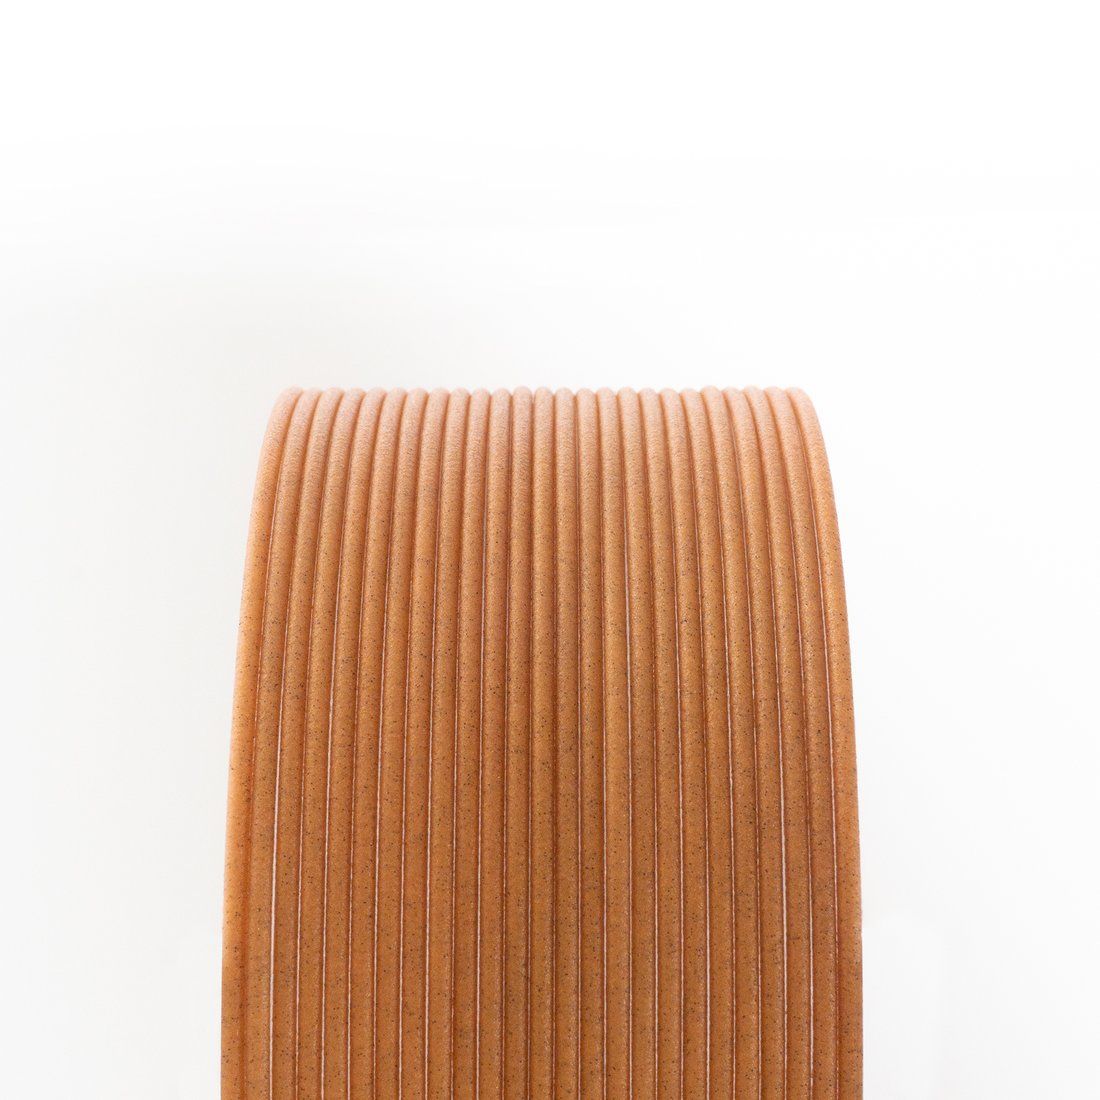 Matte Fiber HTPLA - Honey Wood 1.75mm 3D printing Filament